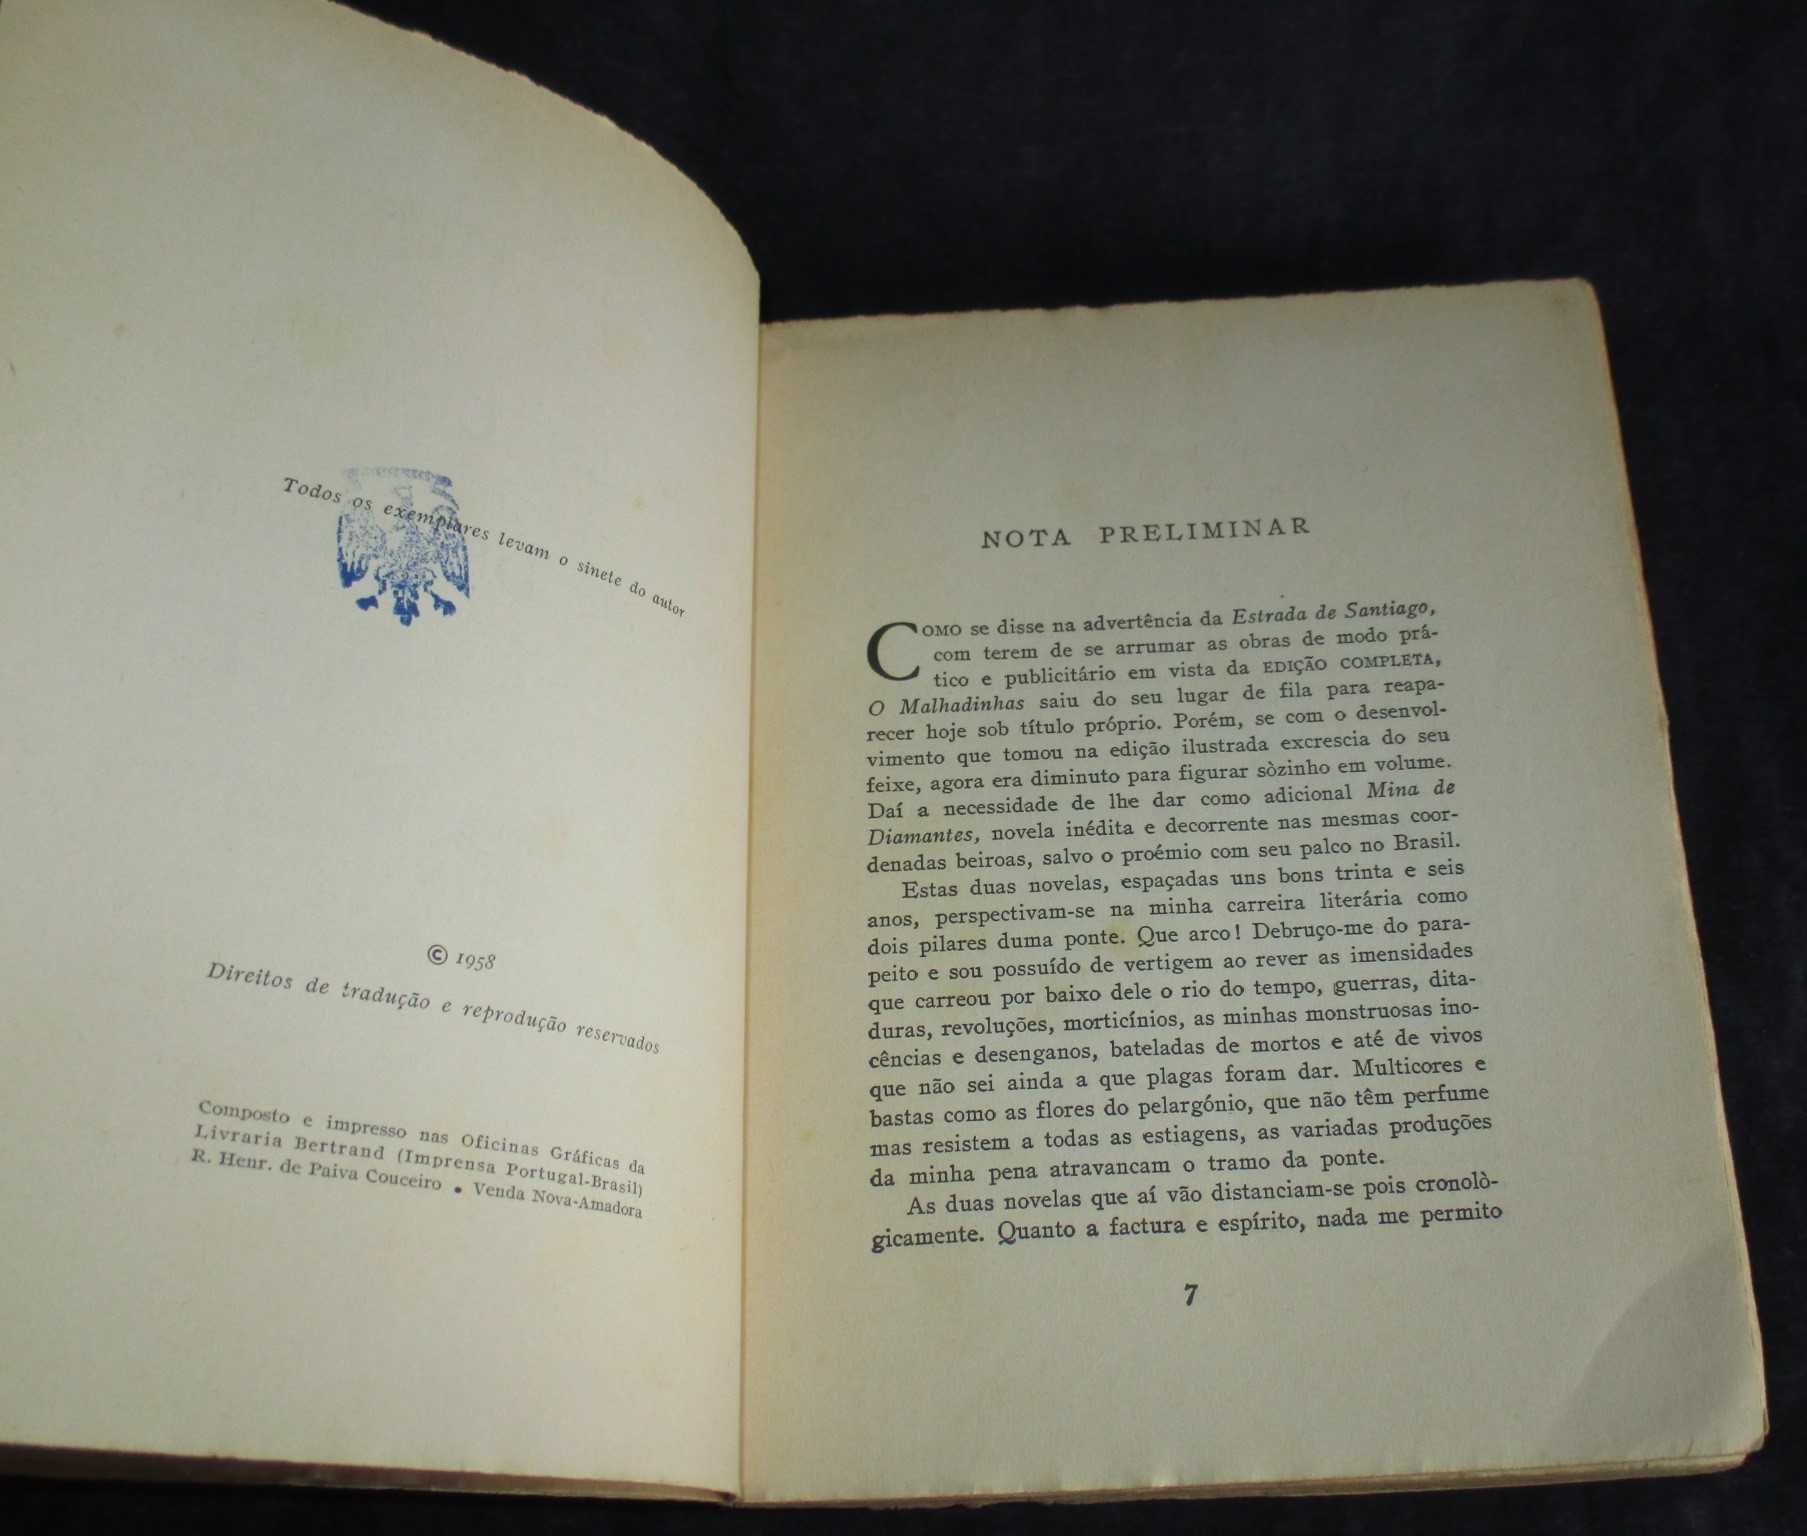 Livro O Malhadinhas Mina de Diamantes Aquilino Ribeiro 1ª edição 1958